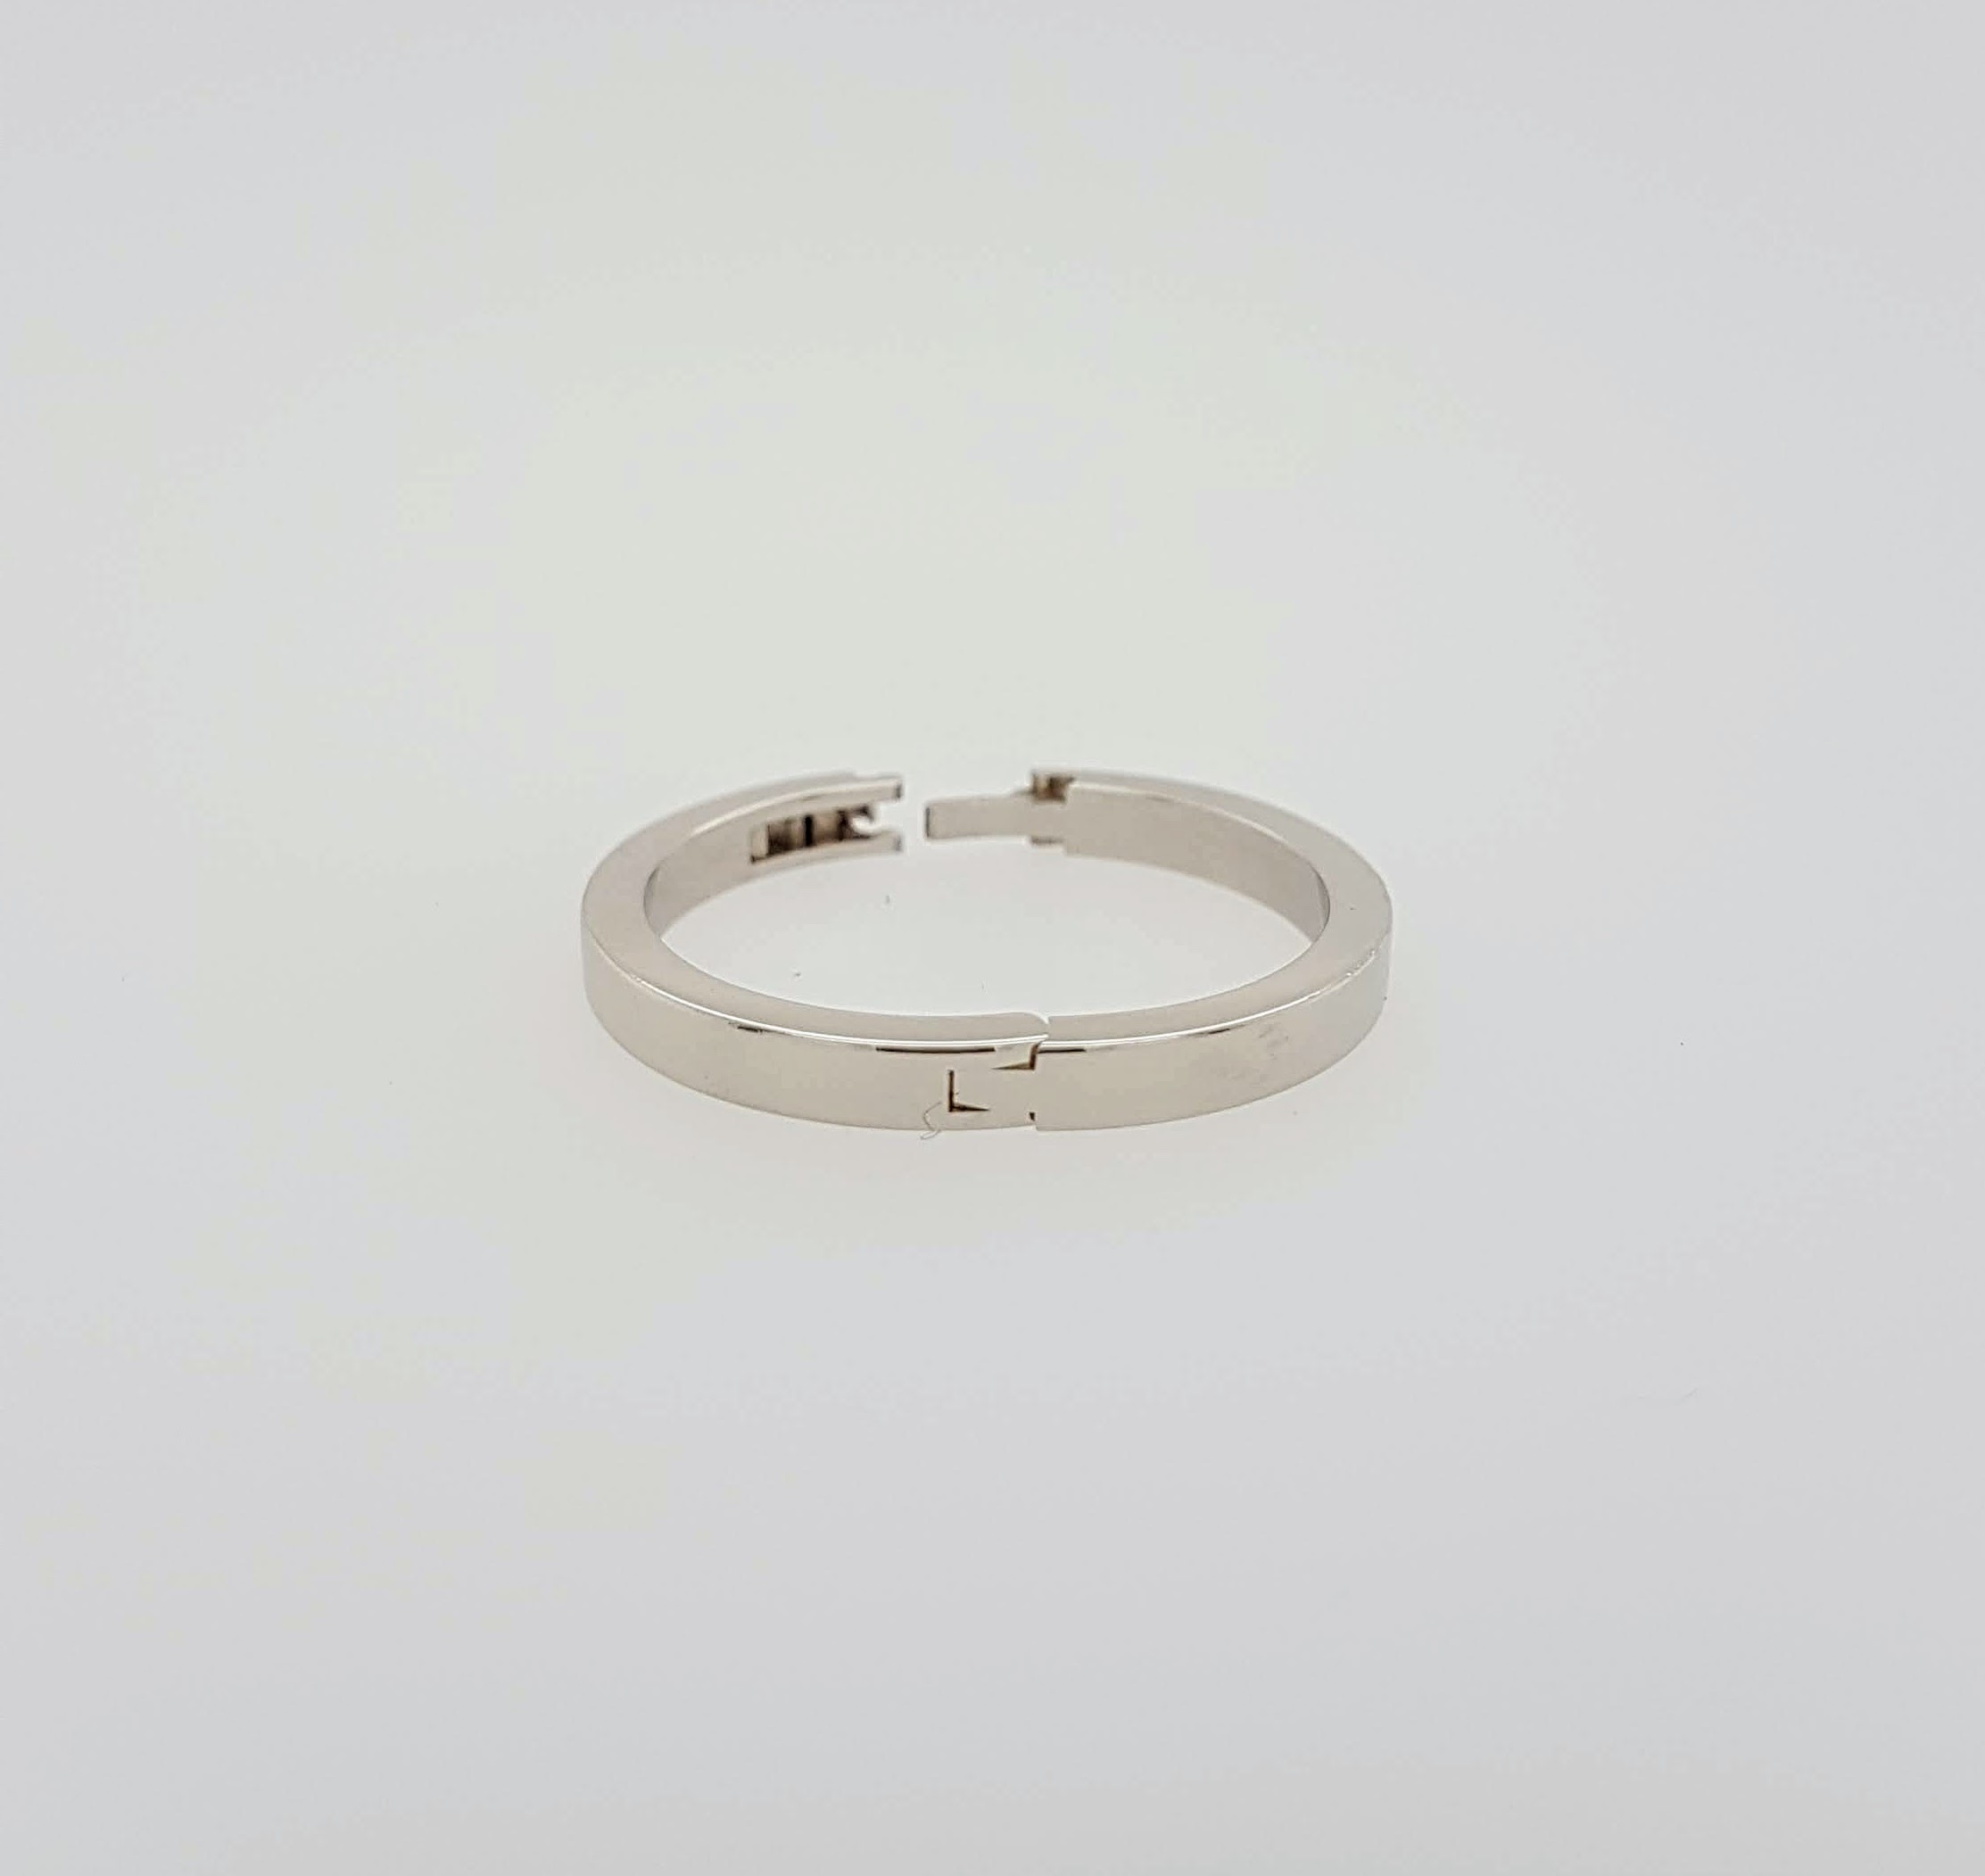 Witgouden ring voor handen met dikke knokkels #1777 | Goudsmederij/Juwelier Arnold van Dodewaard